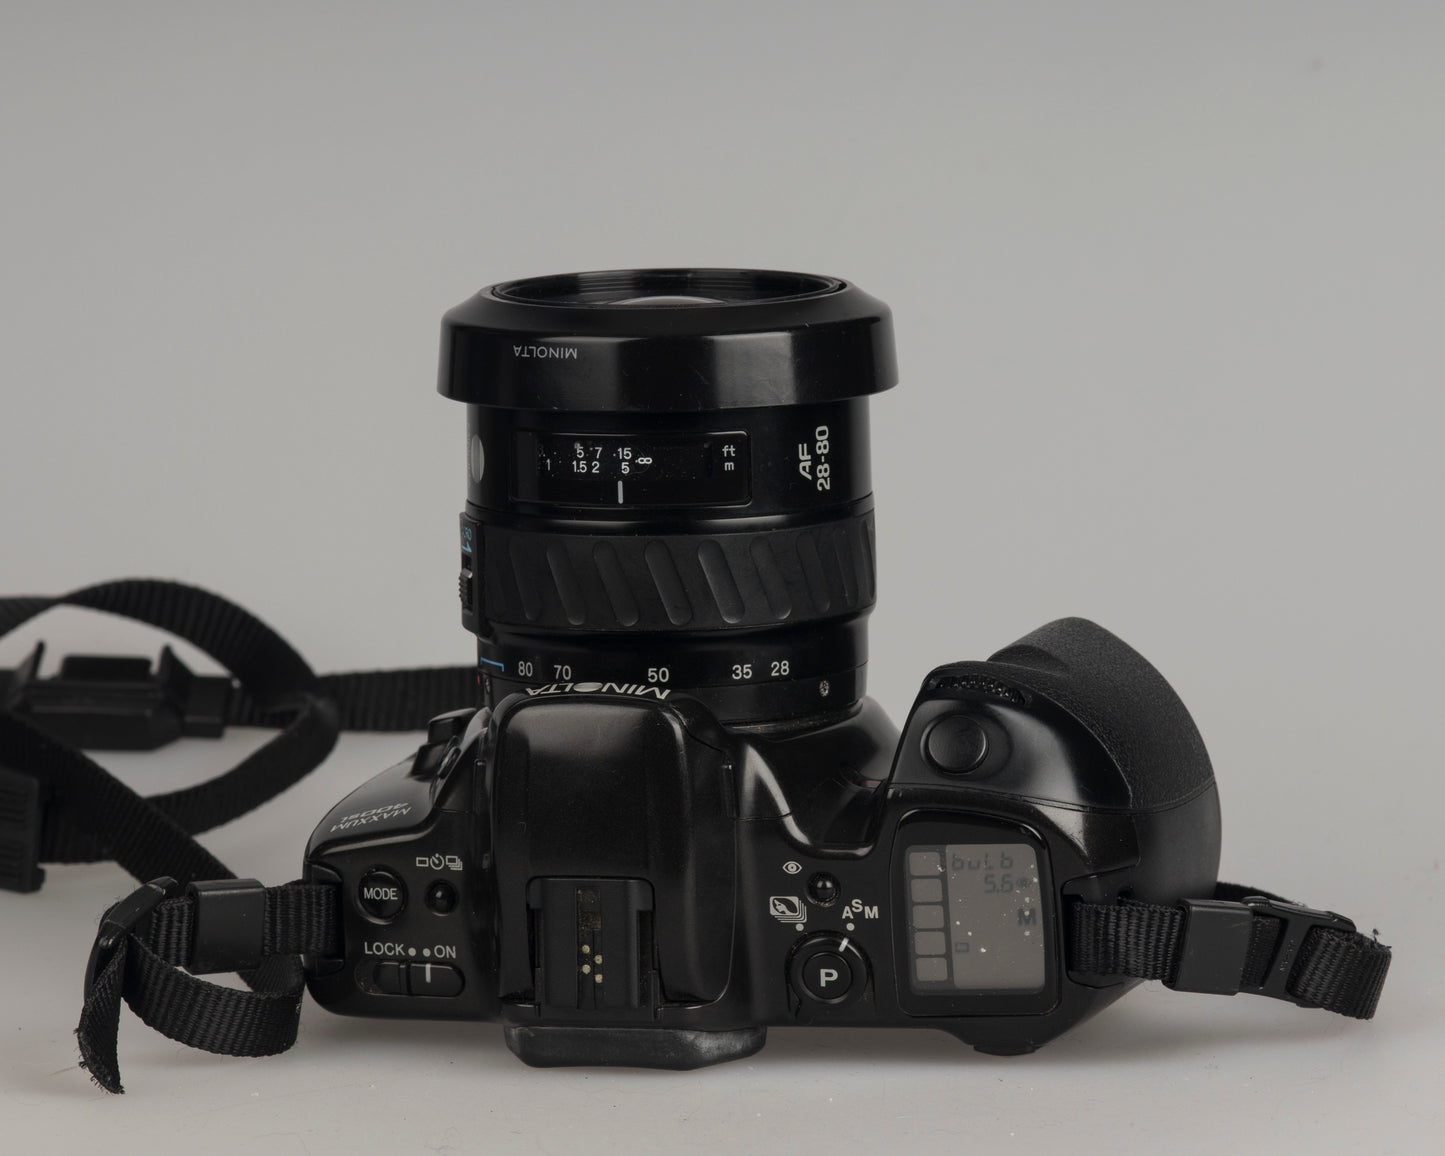 Minolta Maxxum 400si 35mm film SLR camera featuring a 28-80mm lens; top view